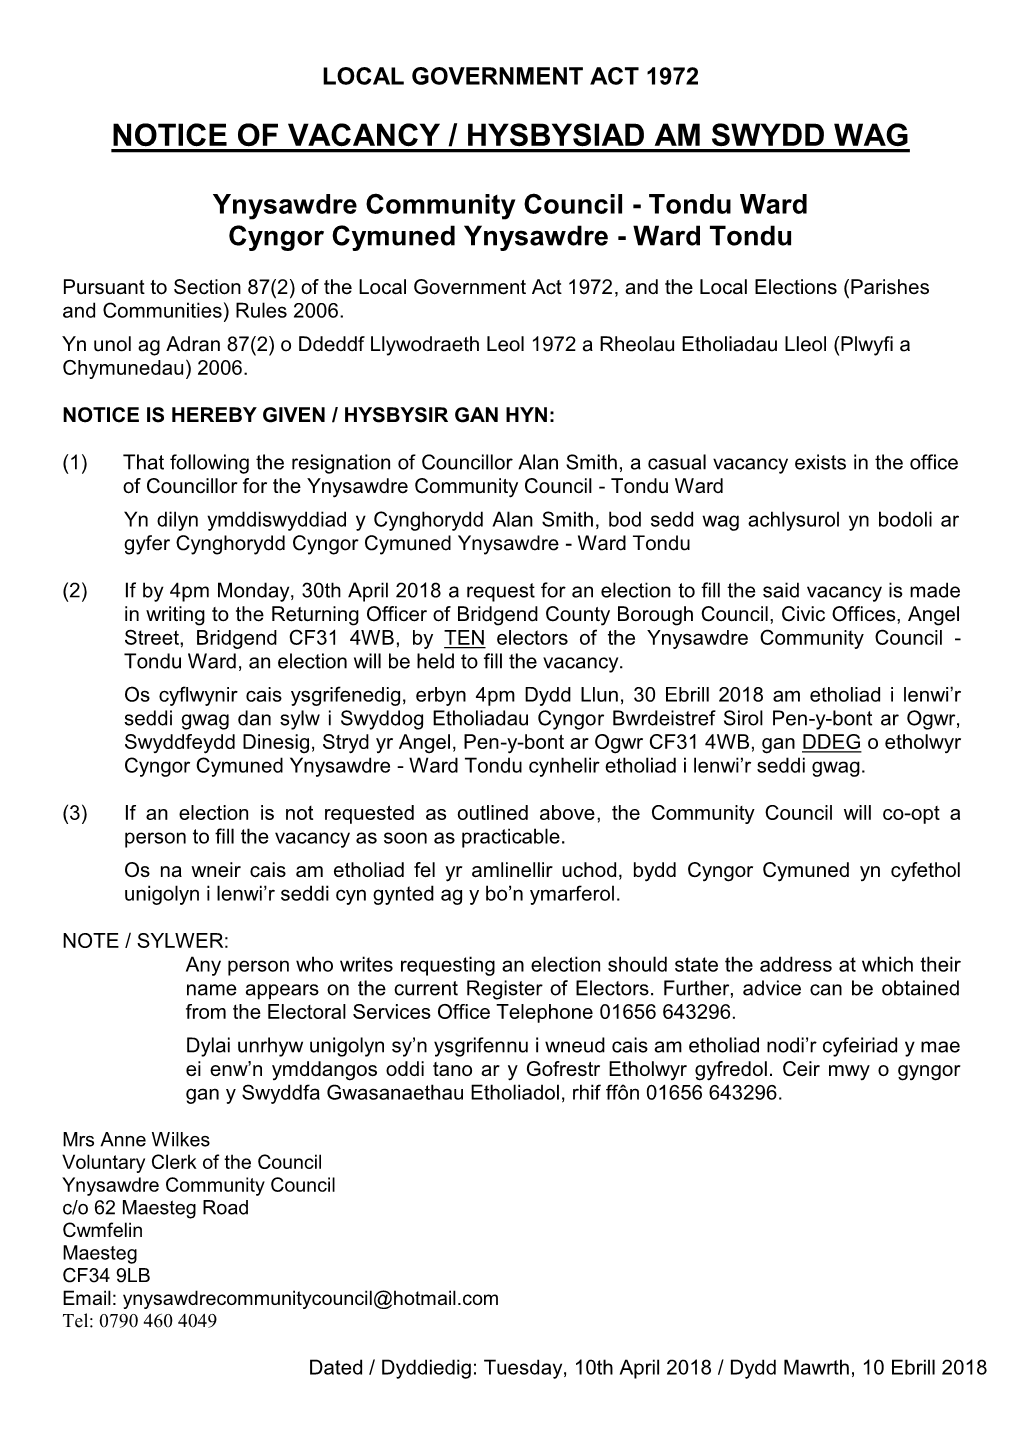 Notice of Vacancy / Hysbysiad Am Swydd Wag